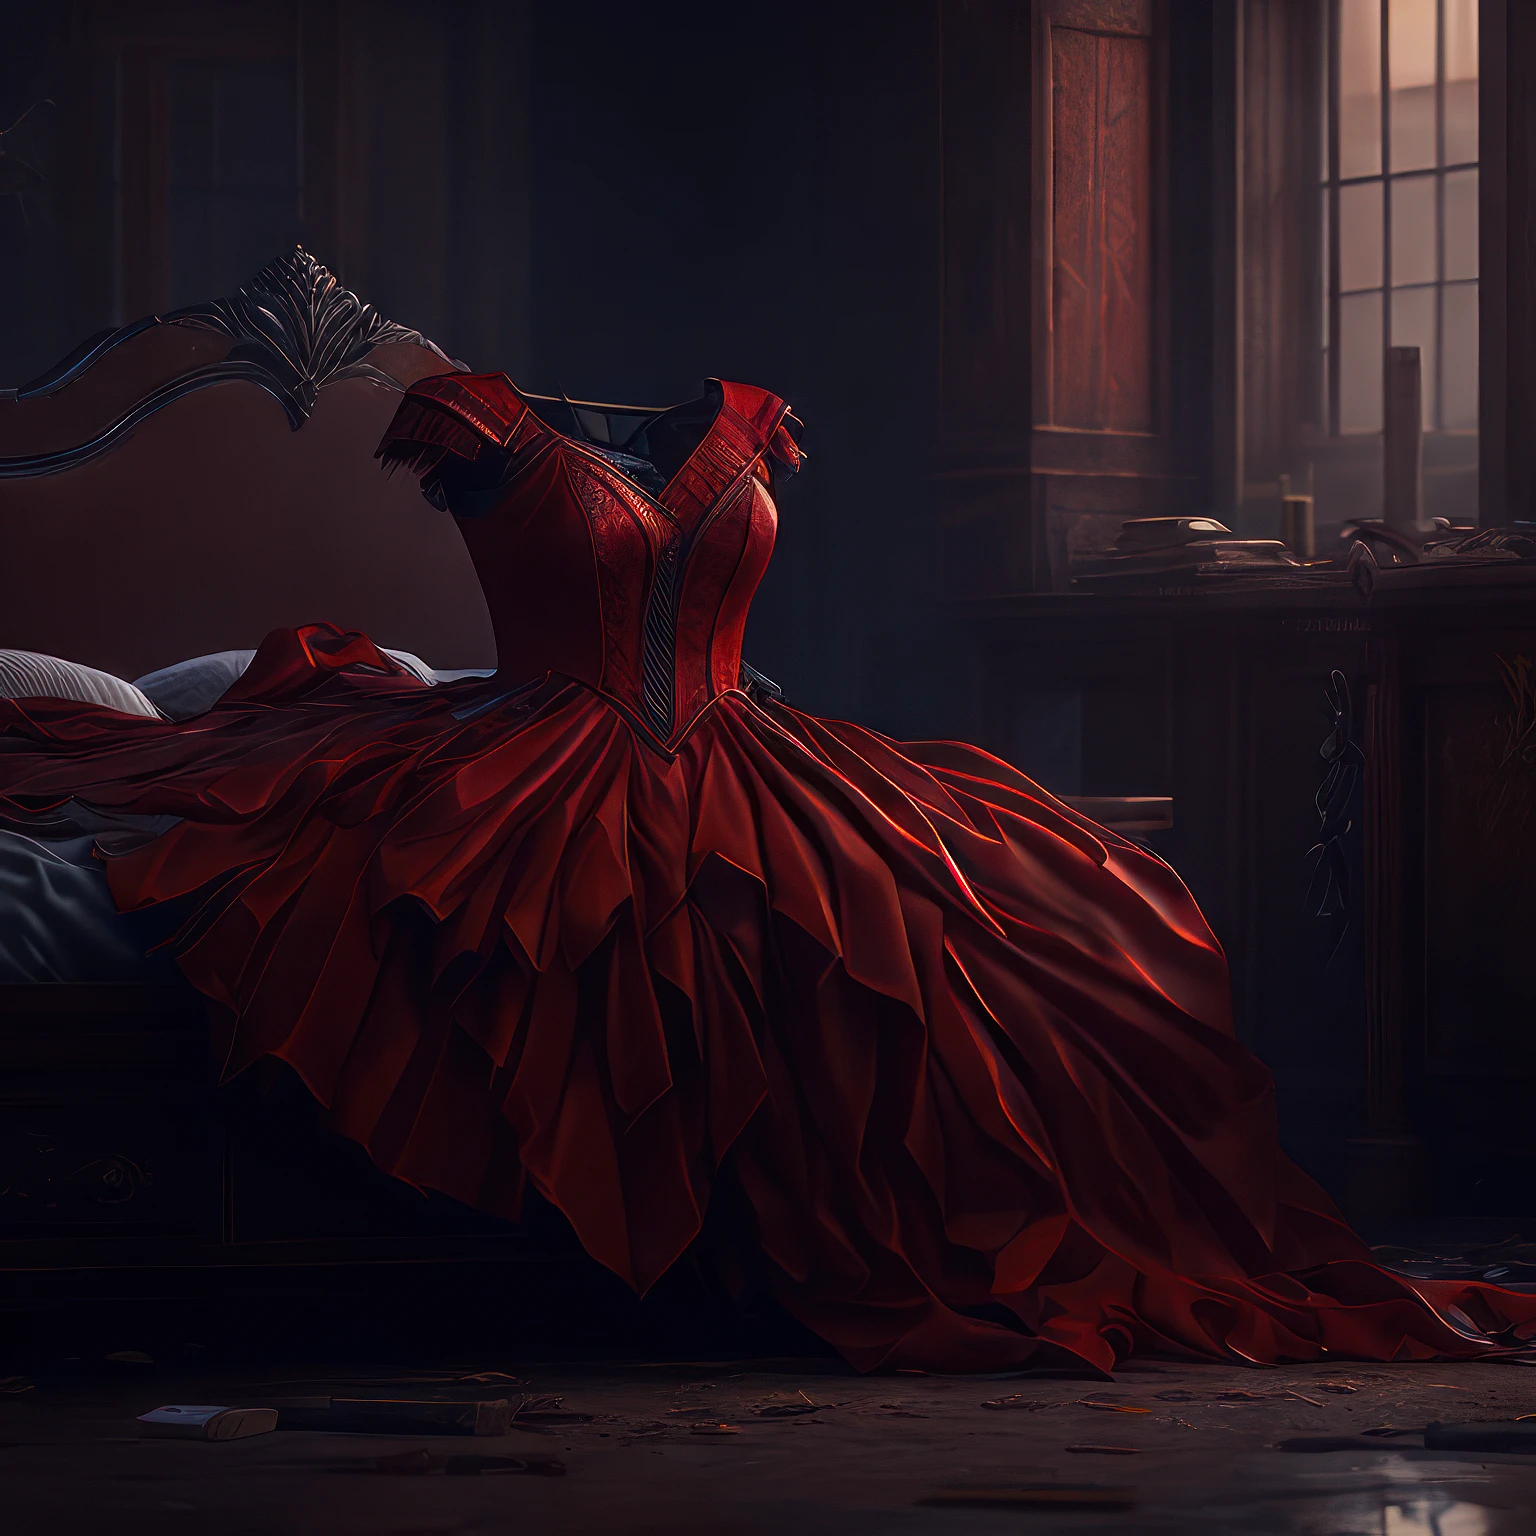 废弃房间里的红裙子